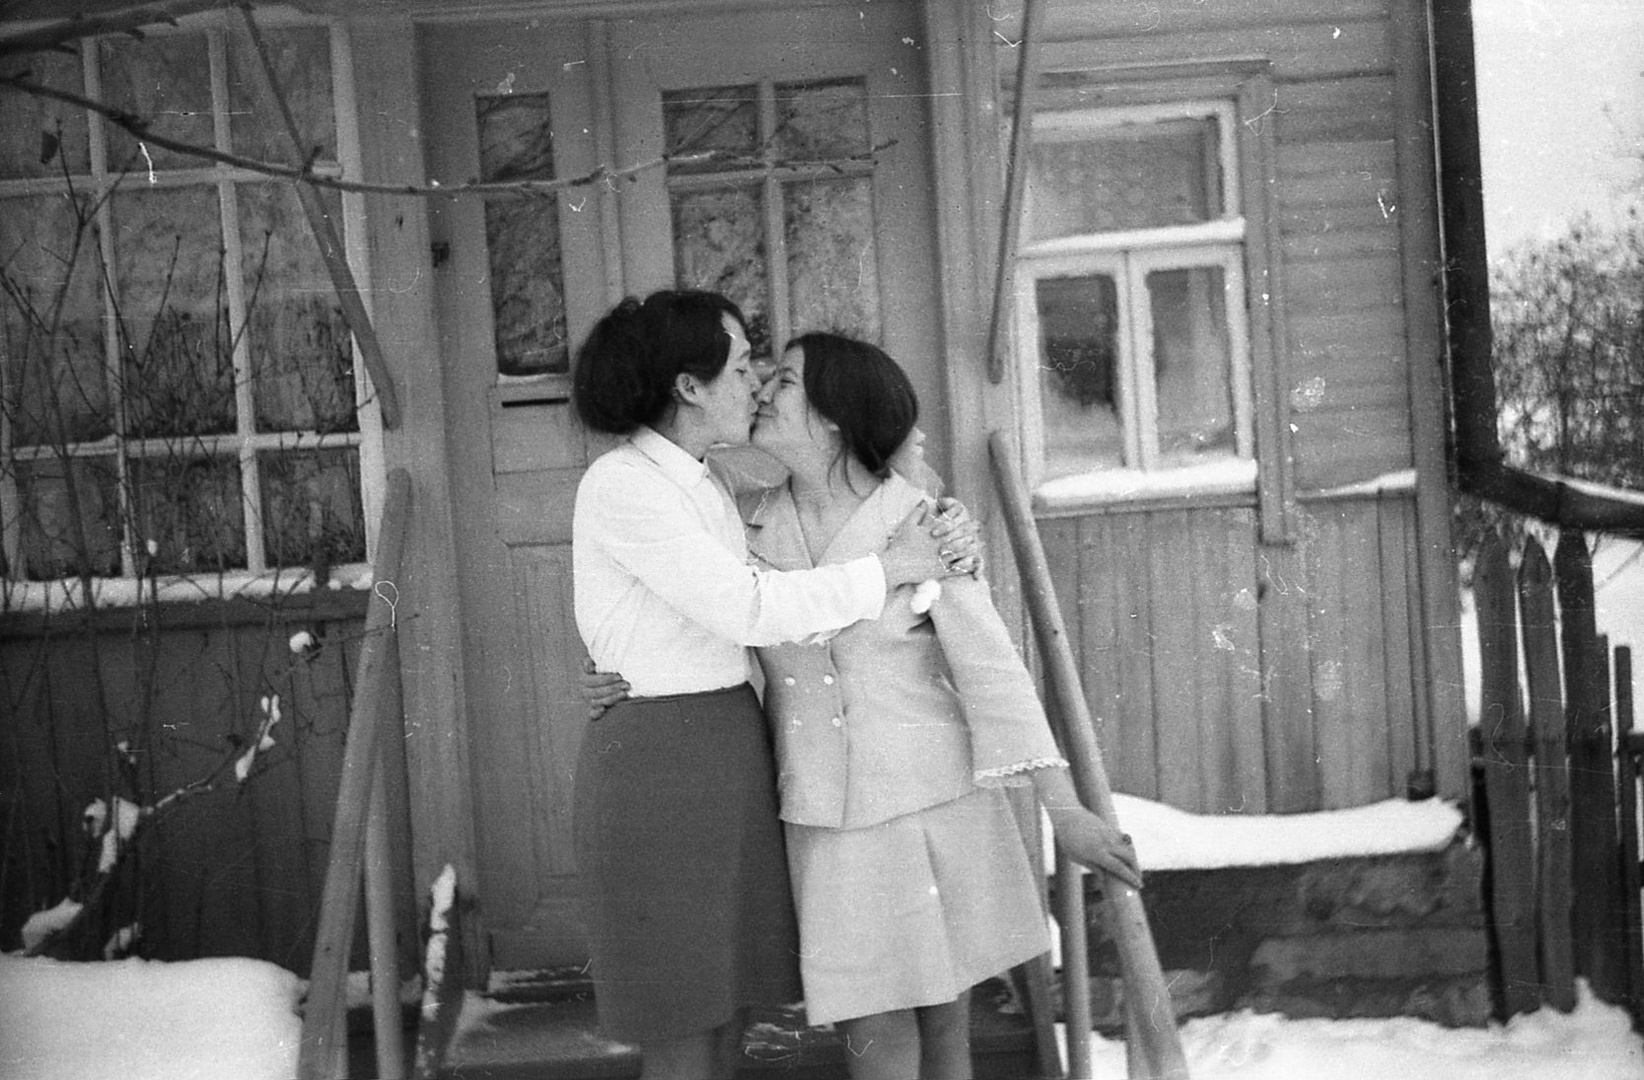 любительские фото советских женщин 70 годов